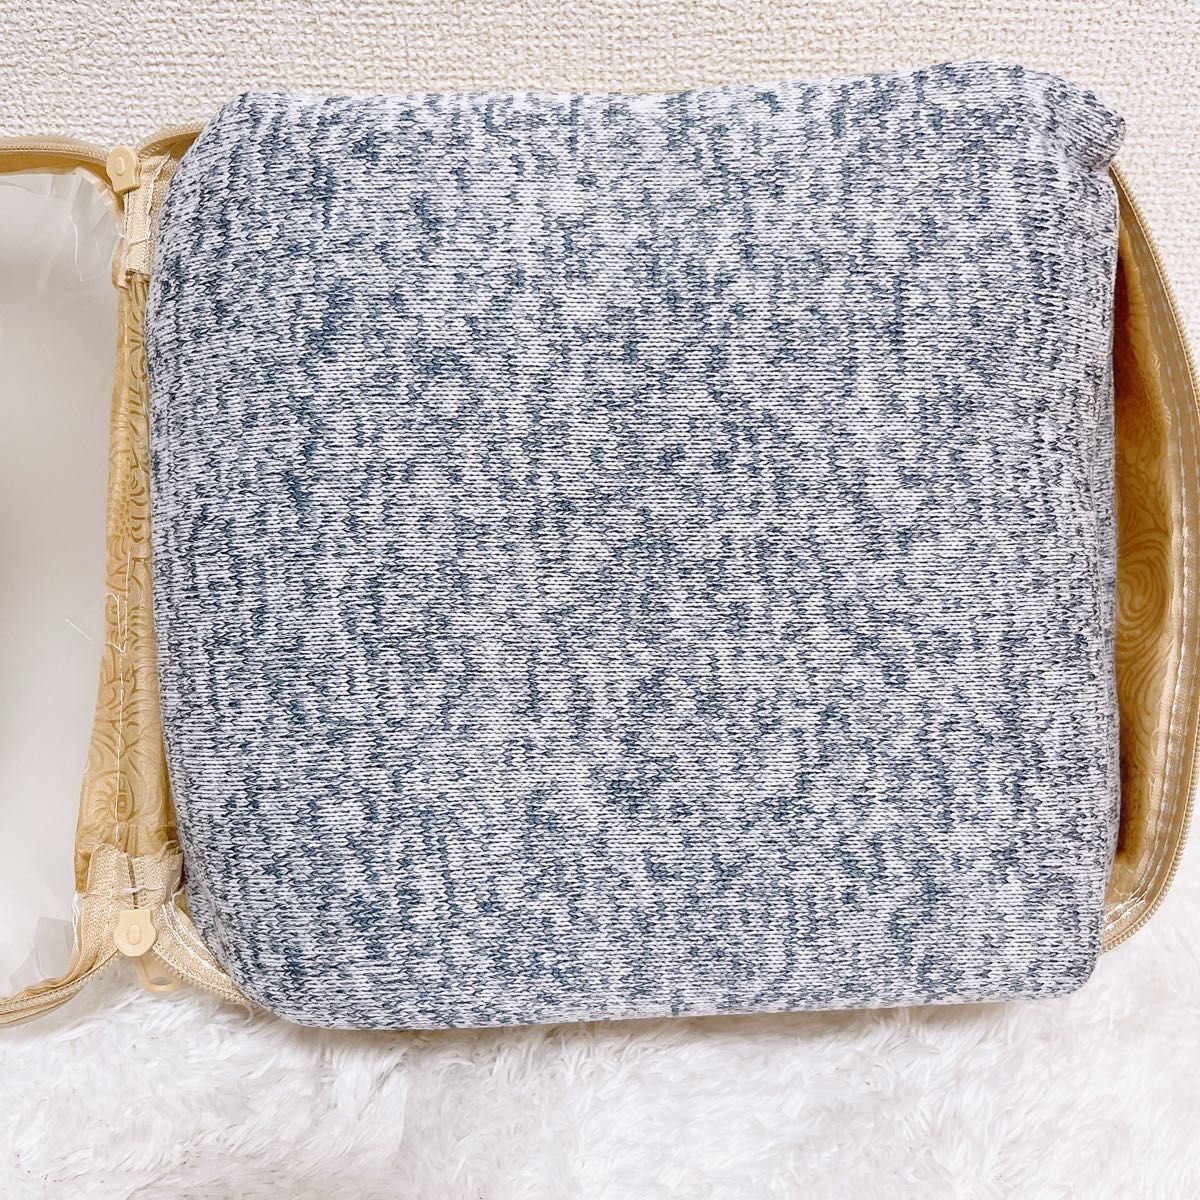 2-2 未使用品 プレミアムブランケット 毛布 洗える ホームクリーニング 140×200 シングル ミックスライトブルー